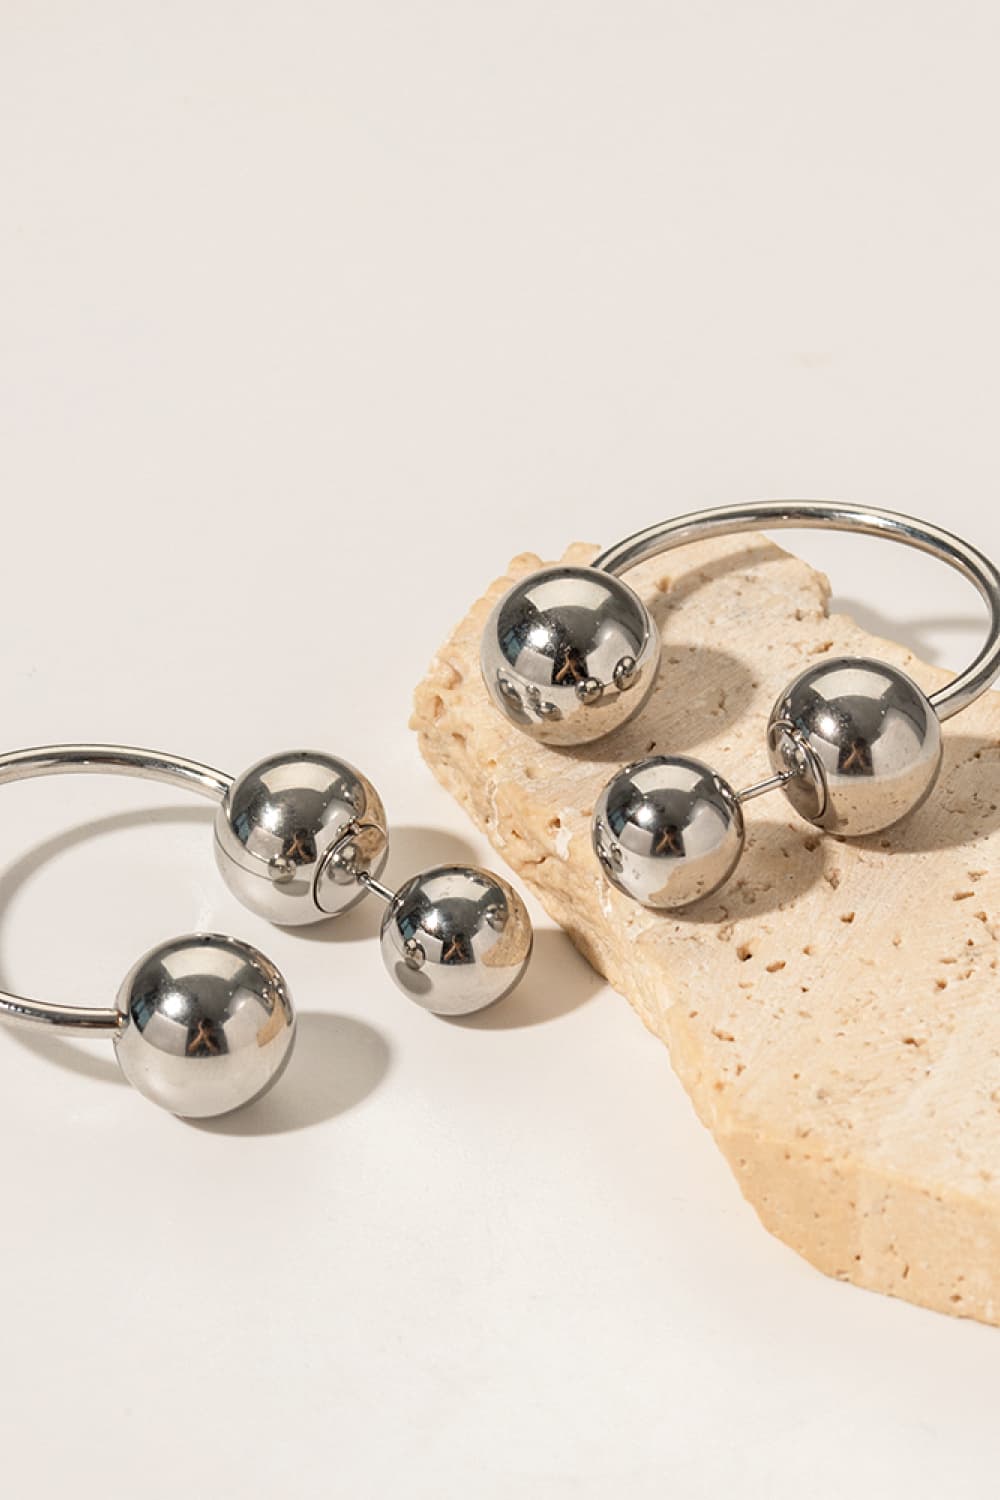 Stainless Steel Ball Earrings